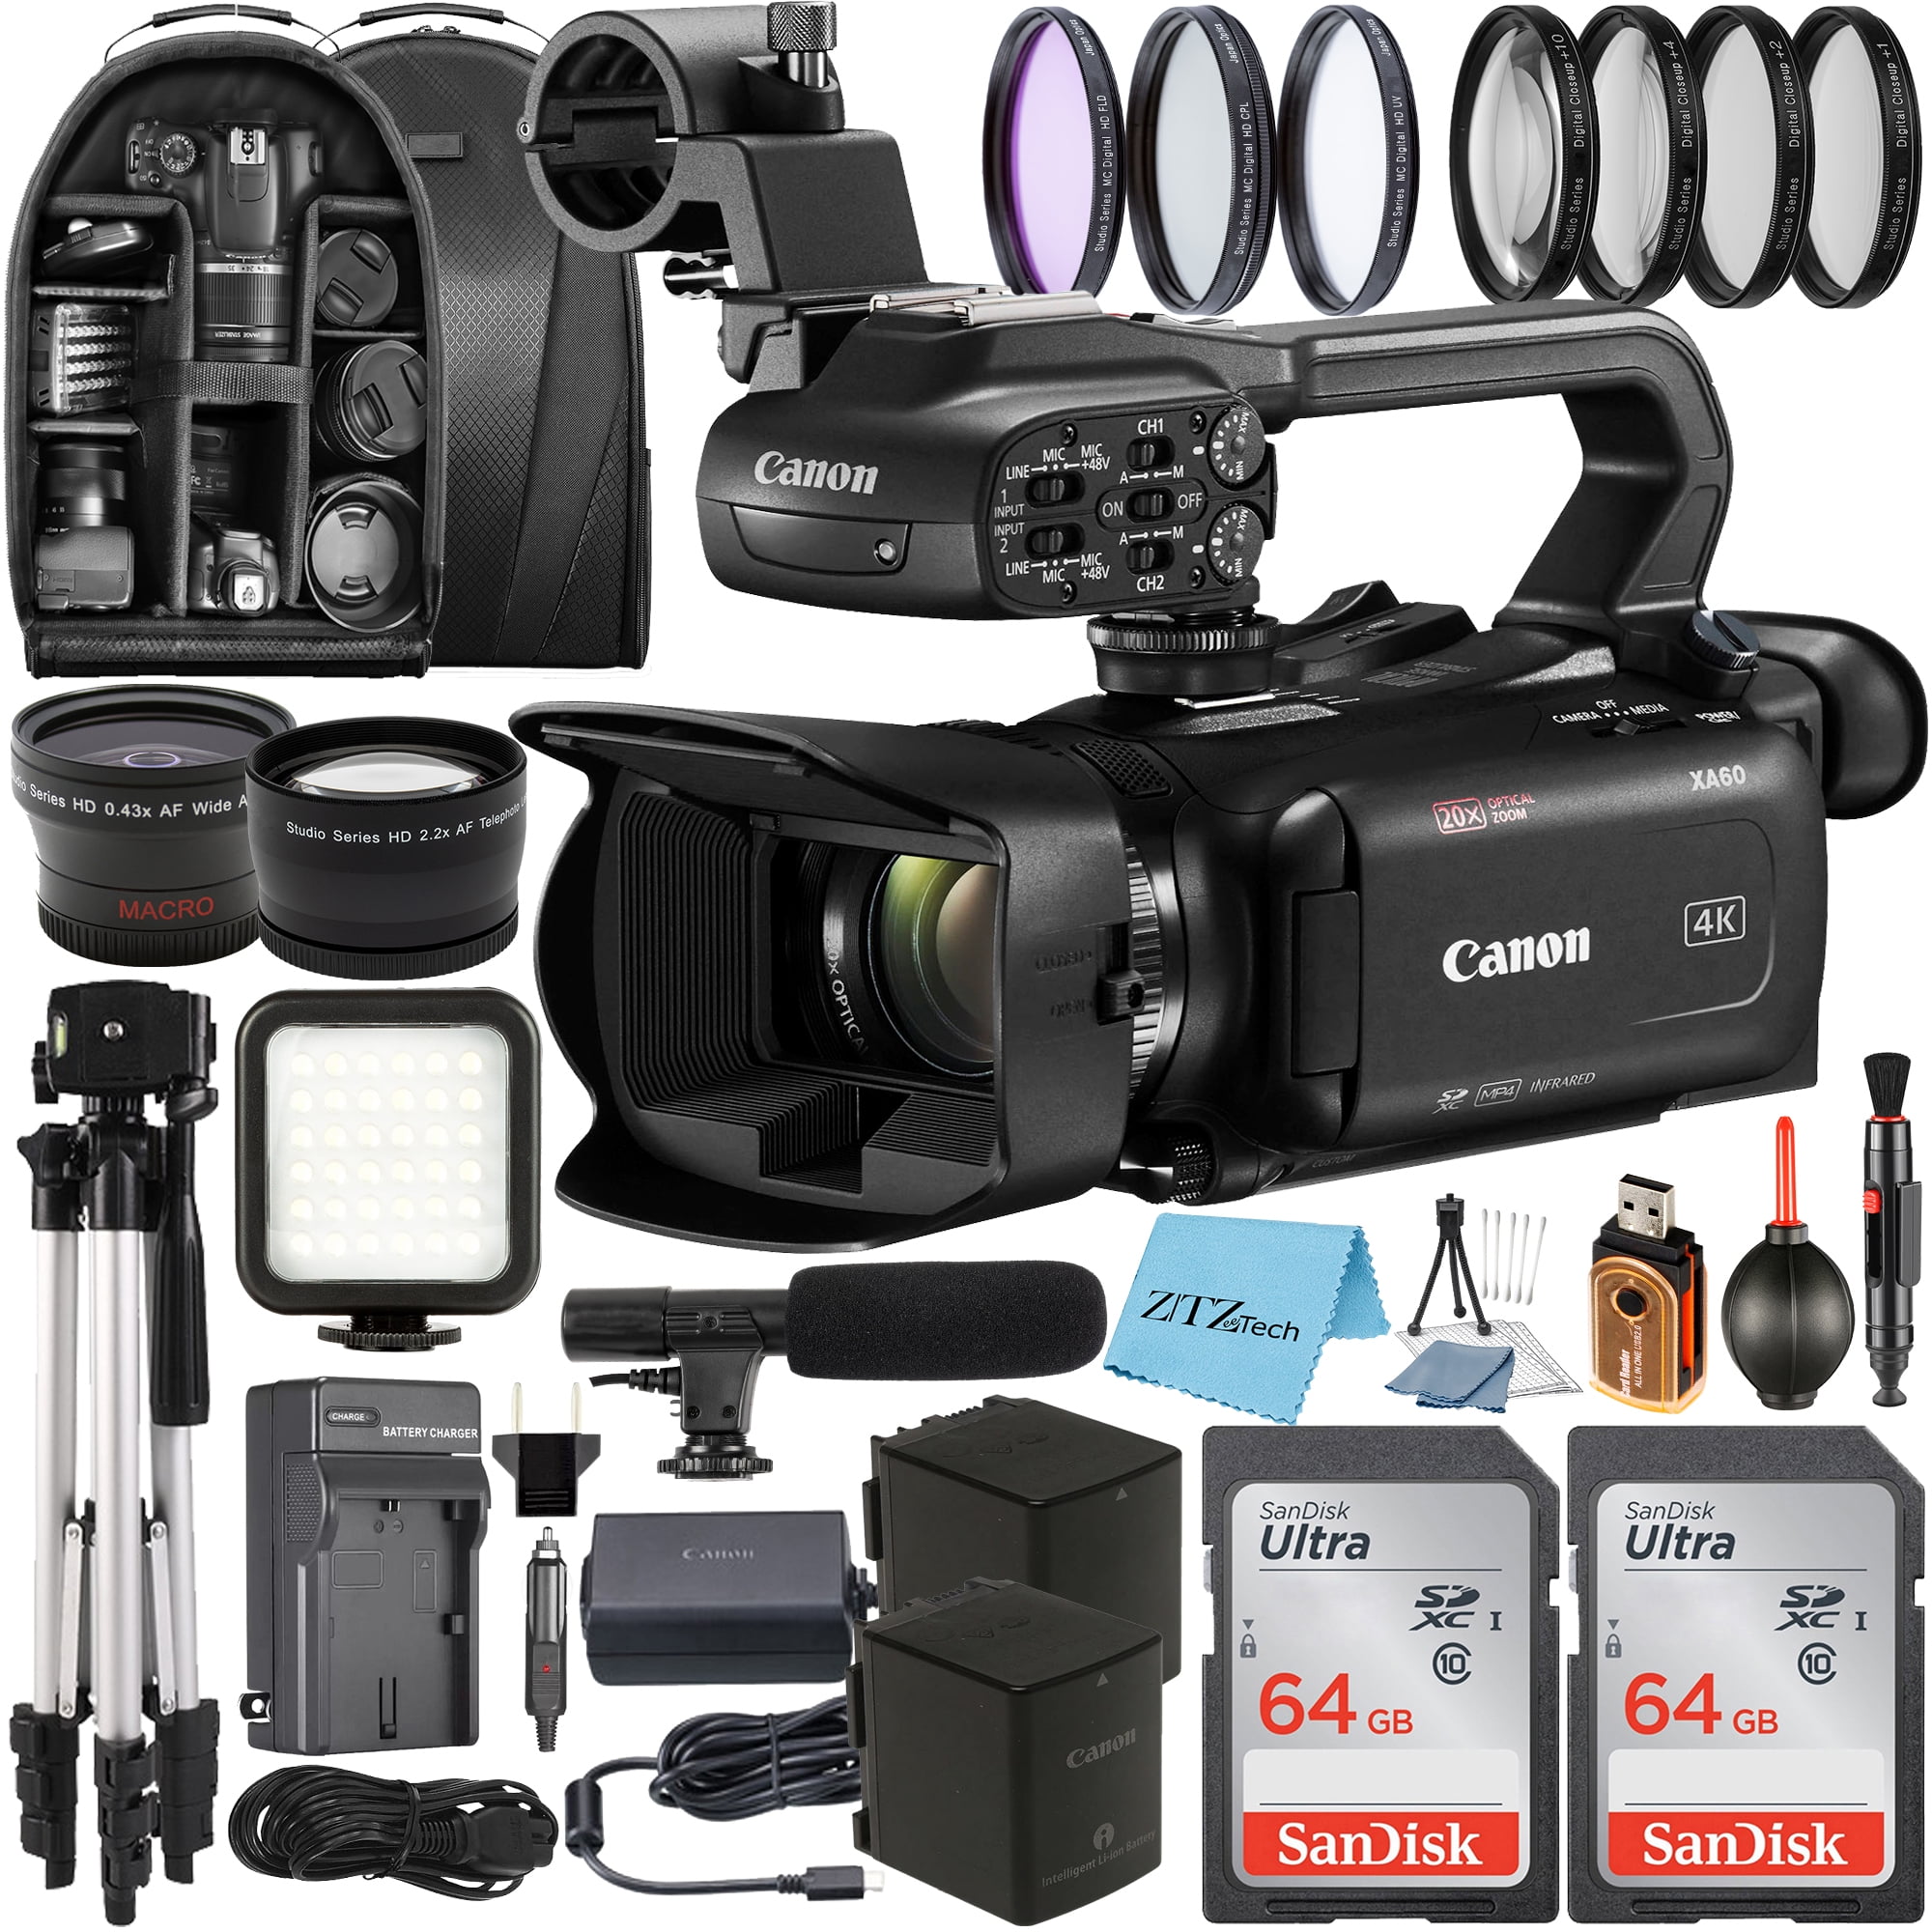 Cámara De Video Profesional Canon Xa11